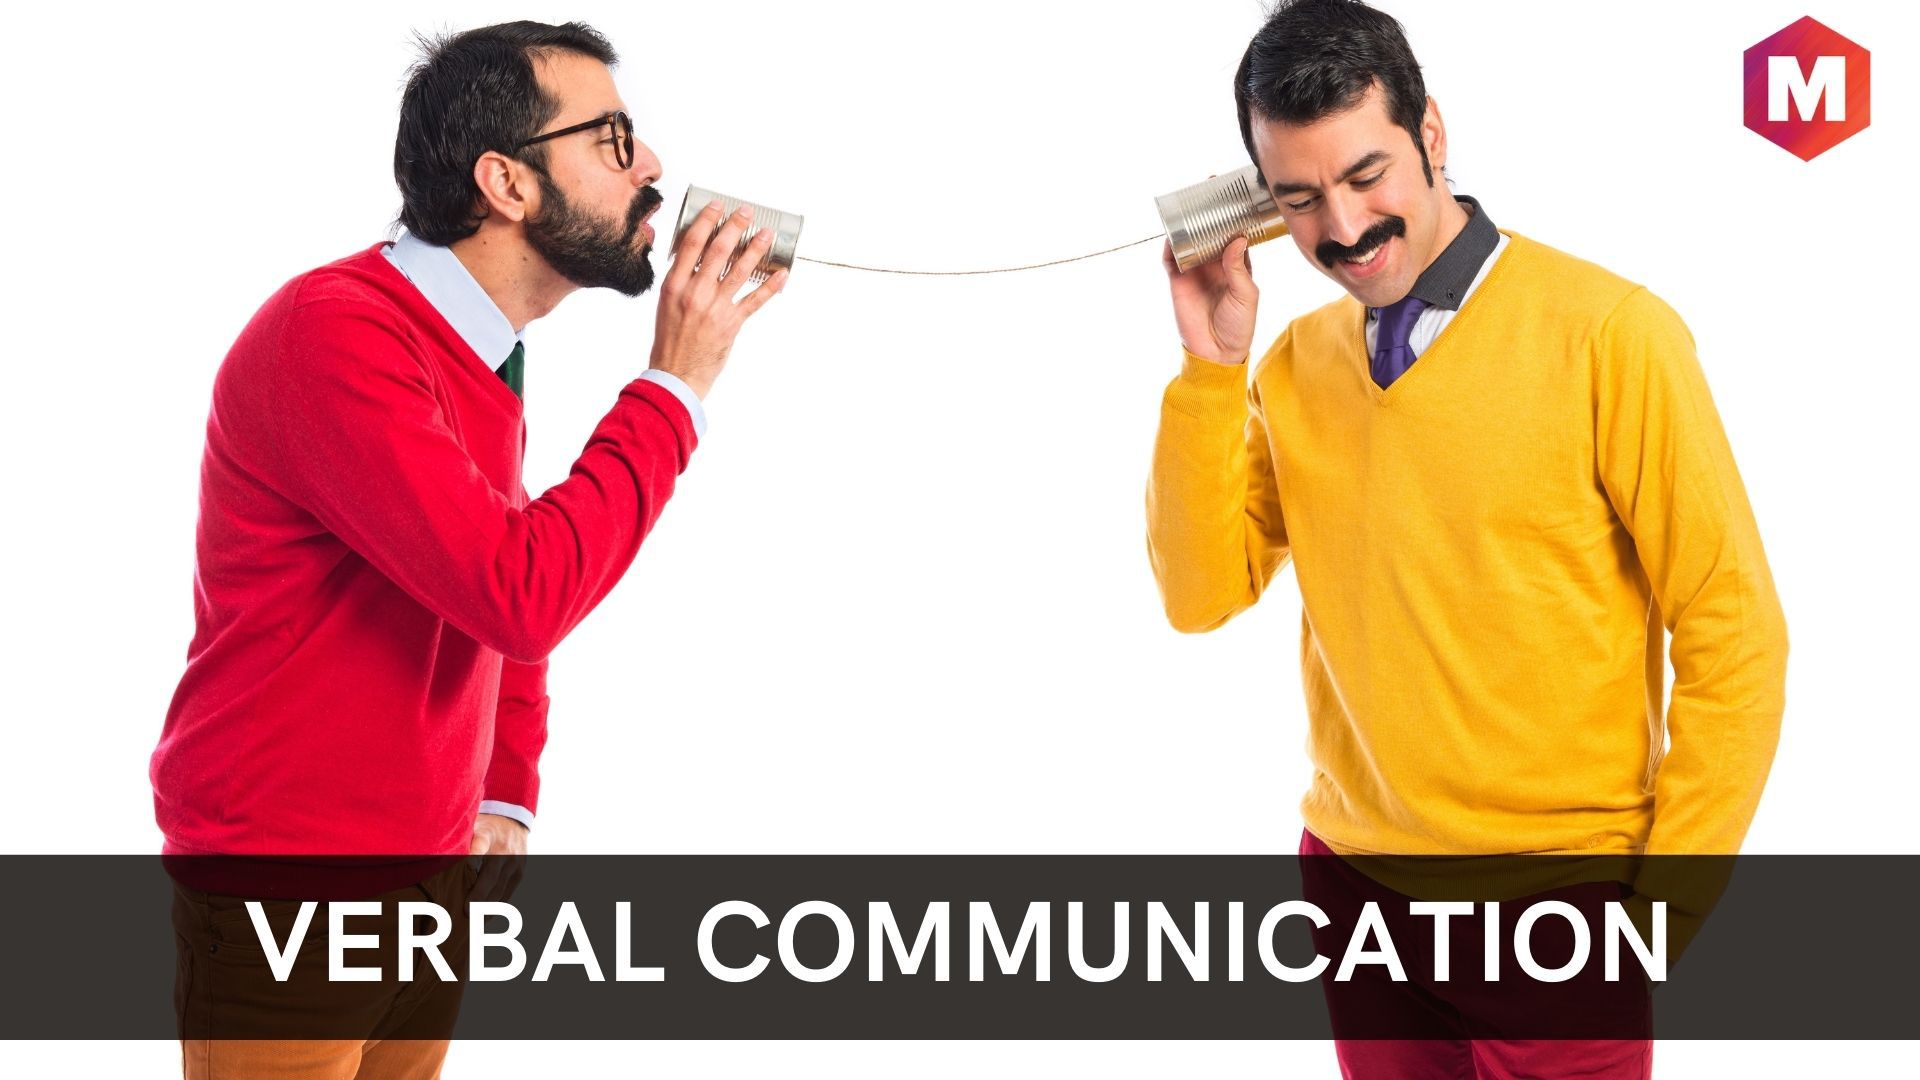 speech is a verbal communication